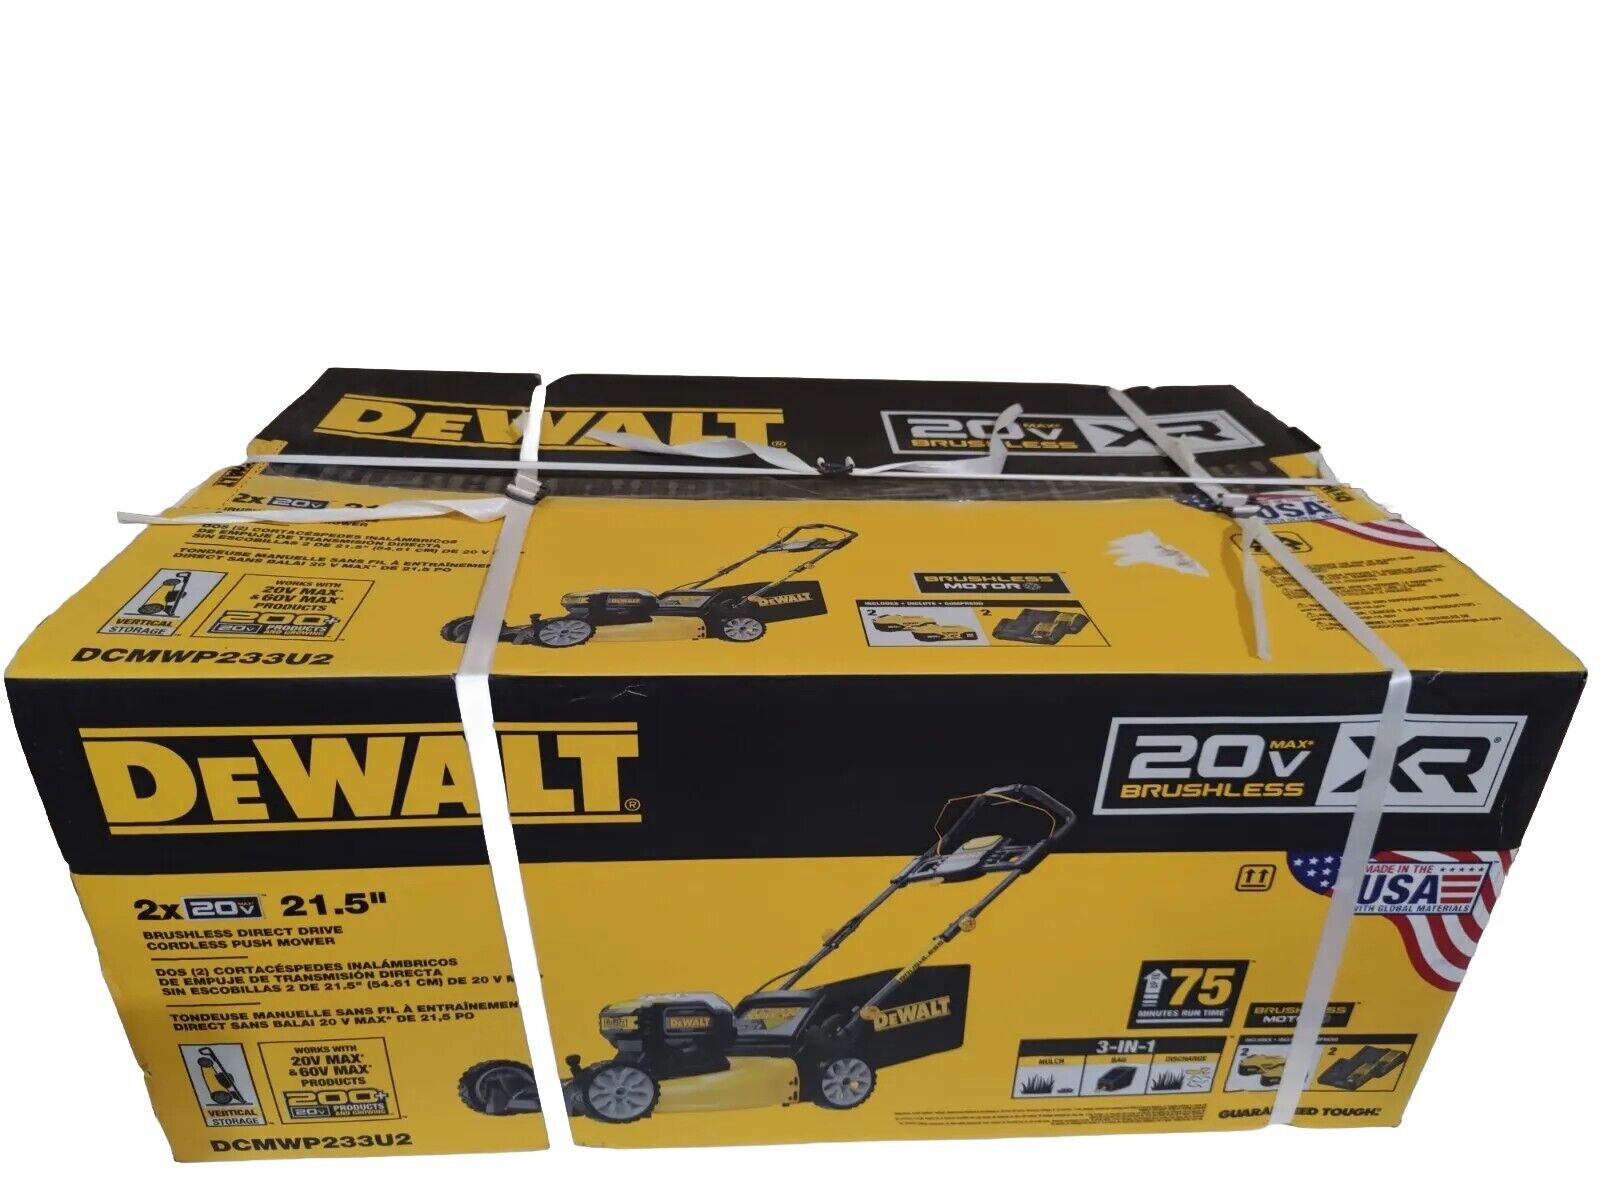 NEW SEALED DEWALT DCMWP233U2 21.5 in. 20-V XR Push Lawn Mower w/2 Batteries 